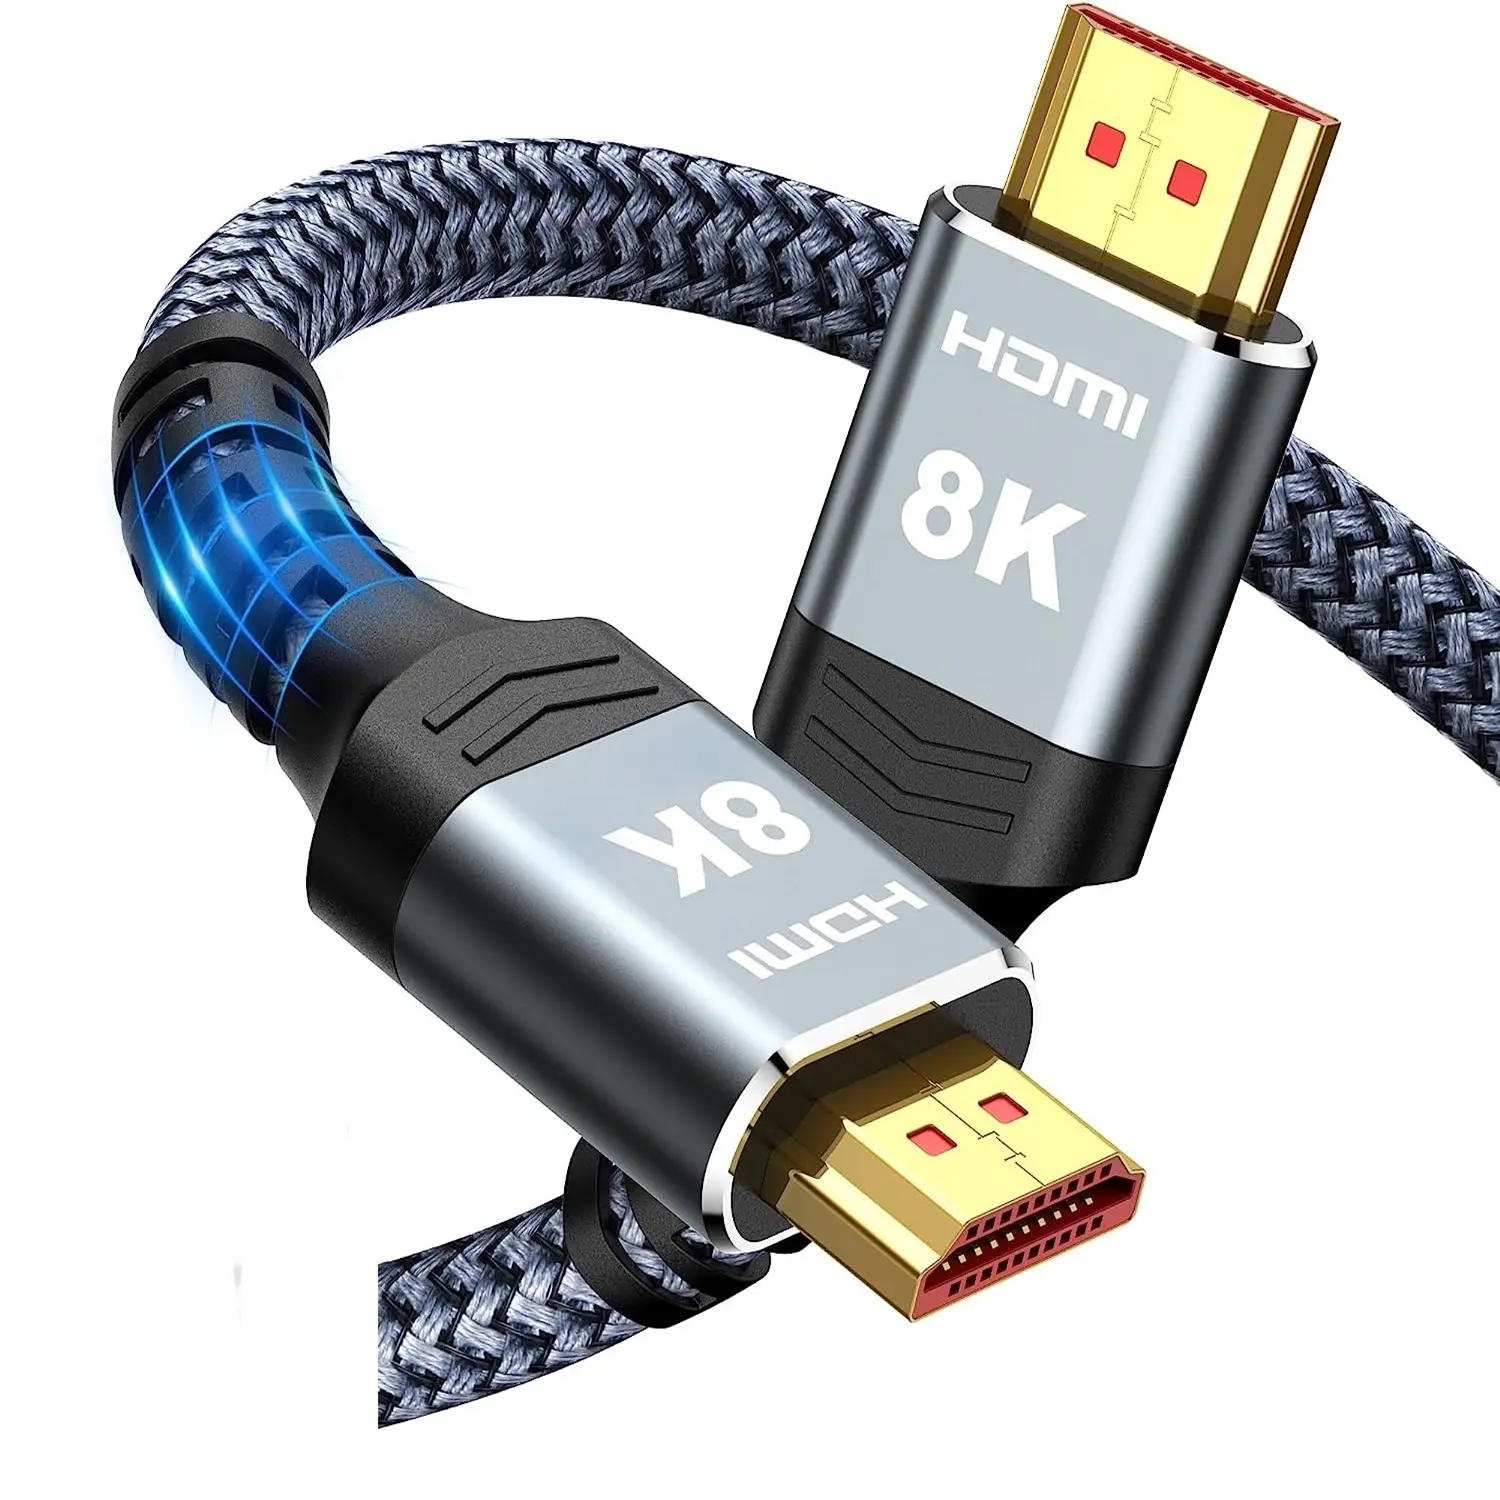 10 K 8 K प्रमाणित अल्ट्रा हाई स्पीड HDMI कॉर्ड, HDTV आदि के लिए 4K@120Hz 8K@60Hz HDMI 2.1 केबल HDMI केबल को सपोर्ट करता है